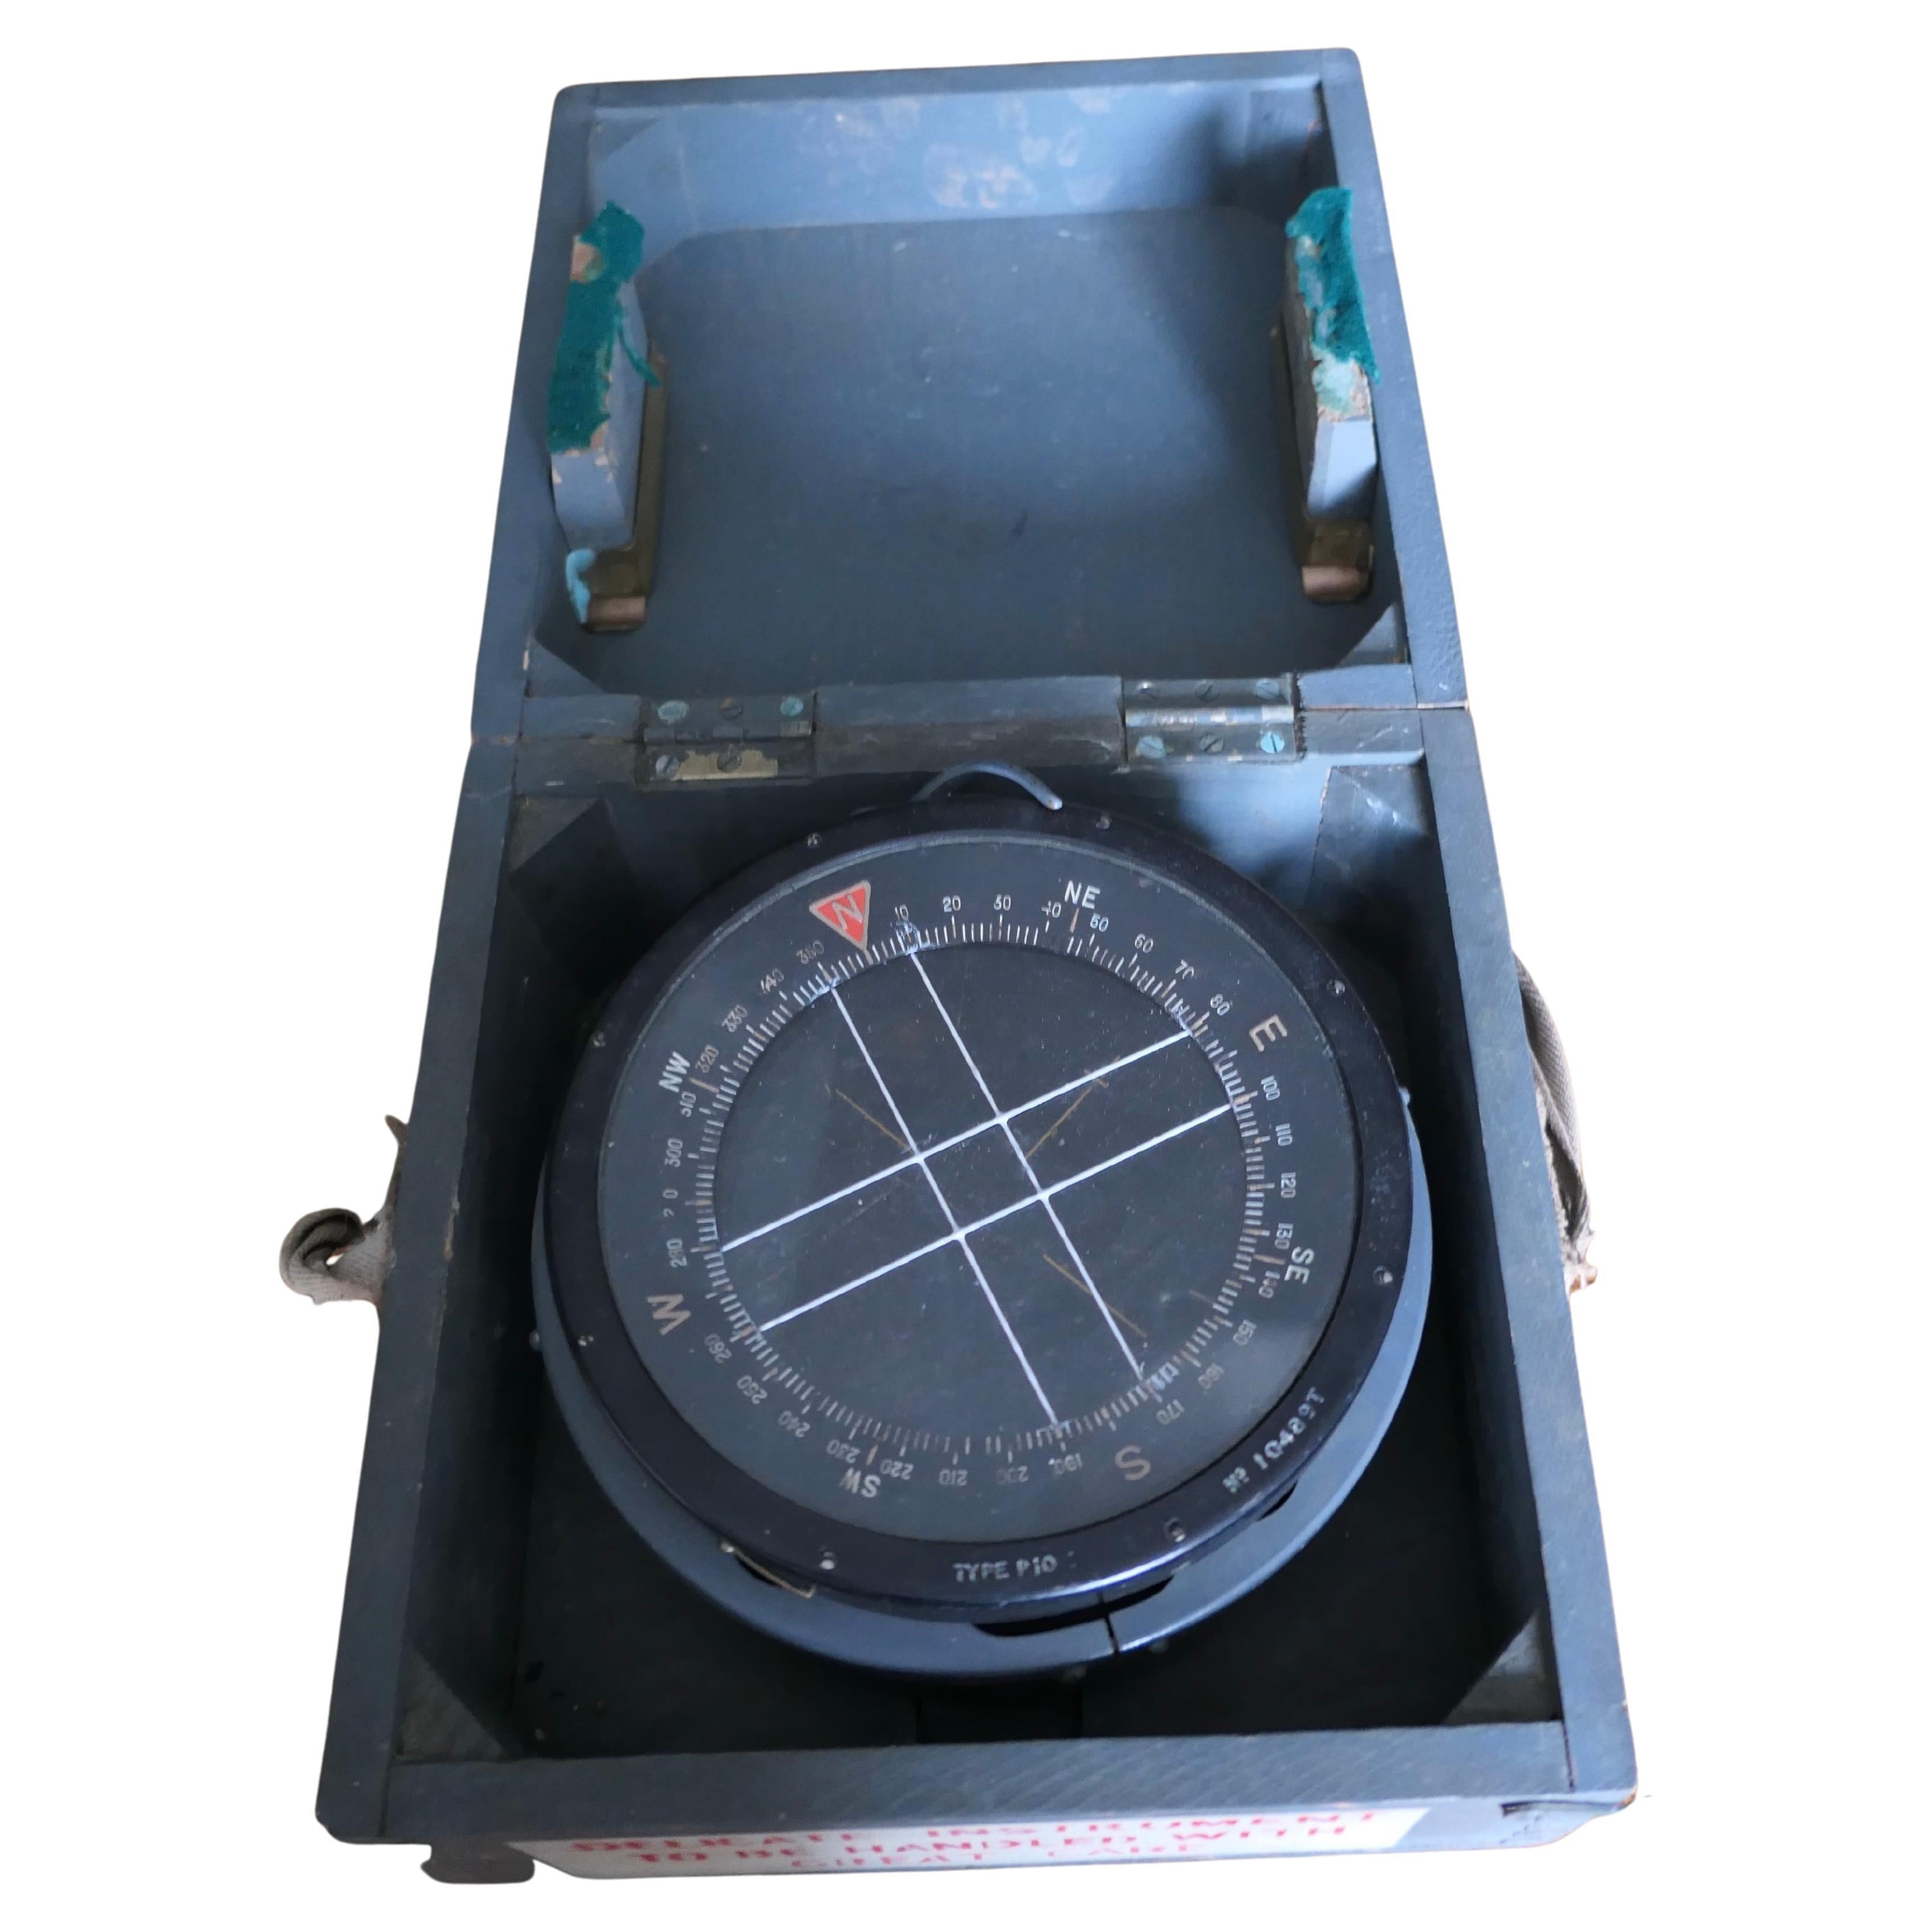 Compass d'avion Royal Air Force P10 de la Royal Air Force n° 10489